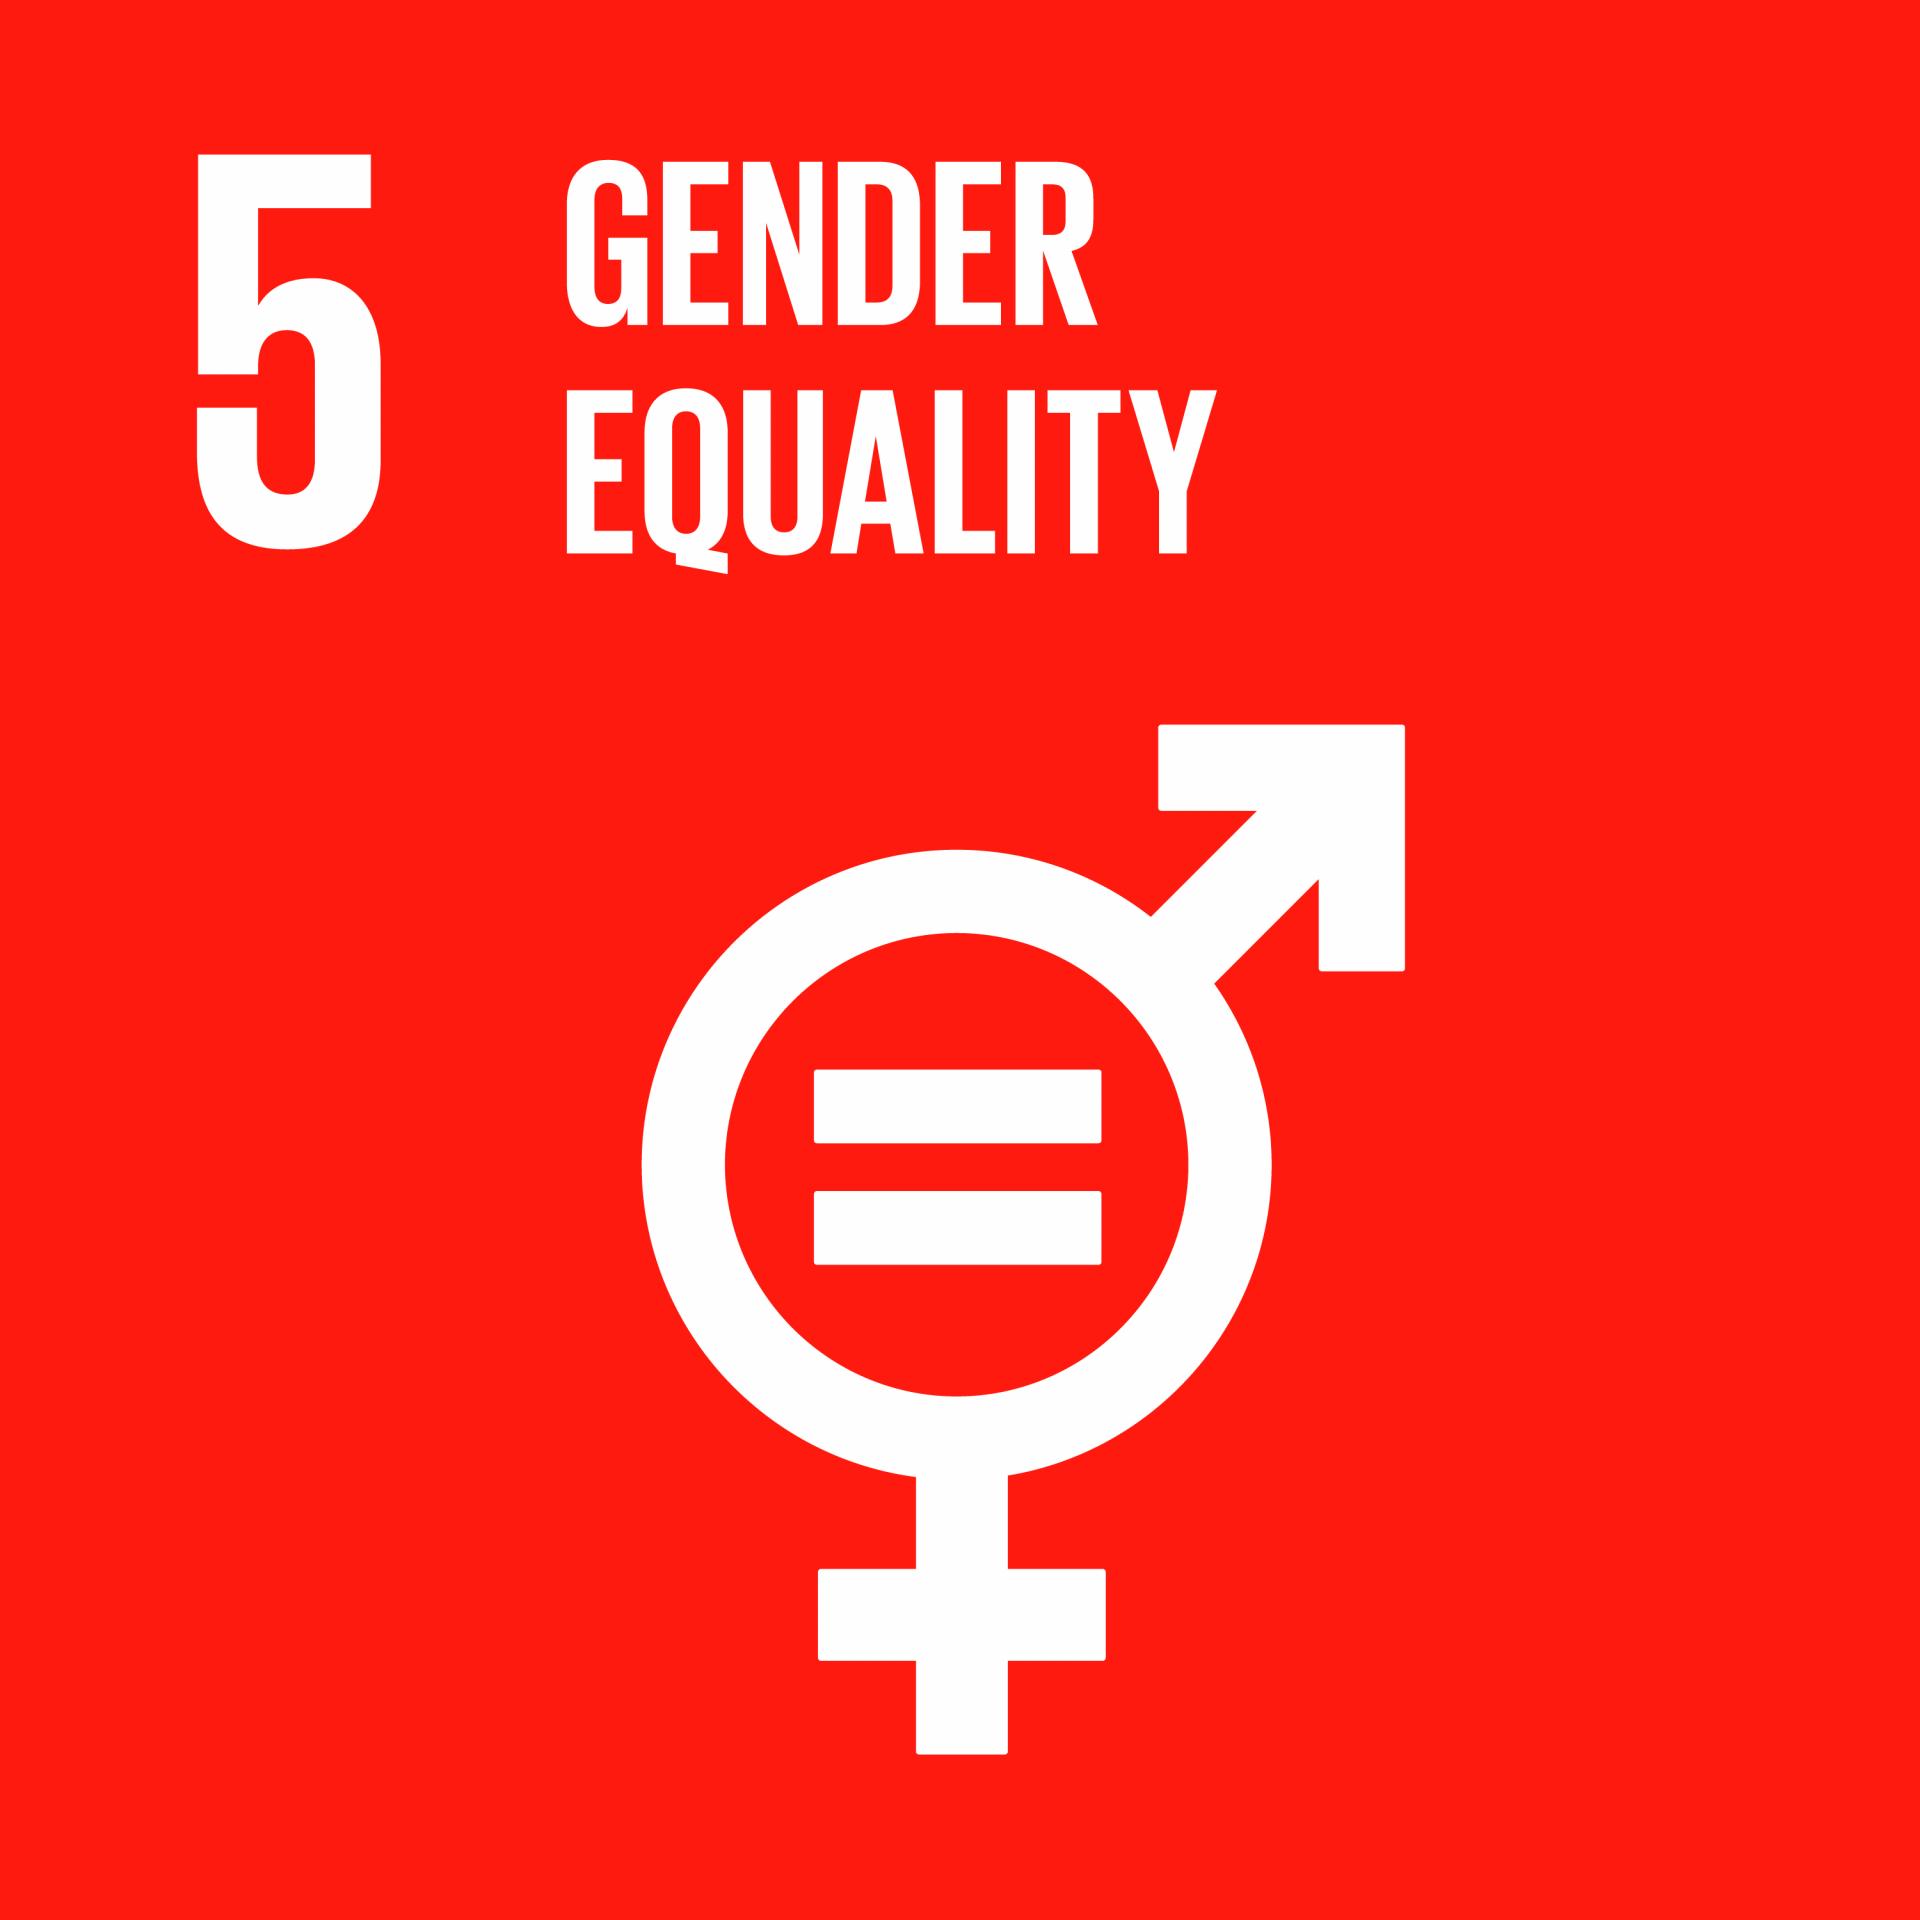 UN SDGs gender equality